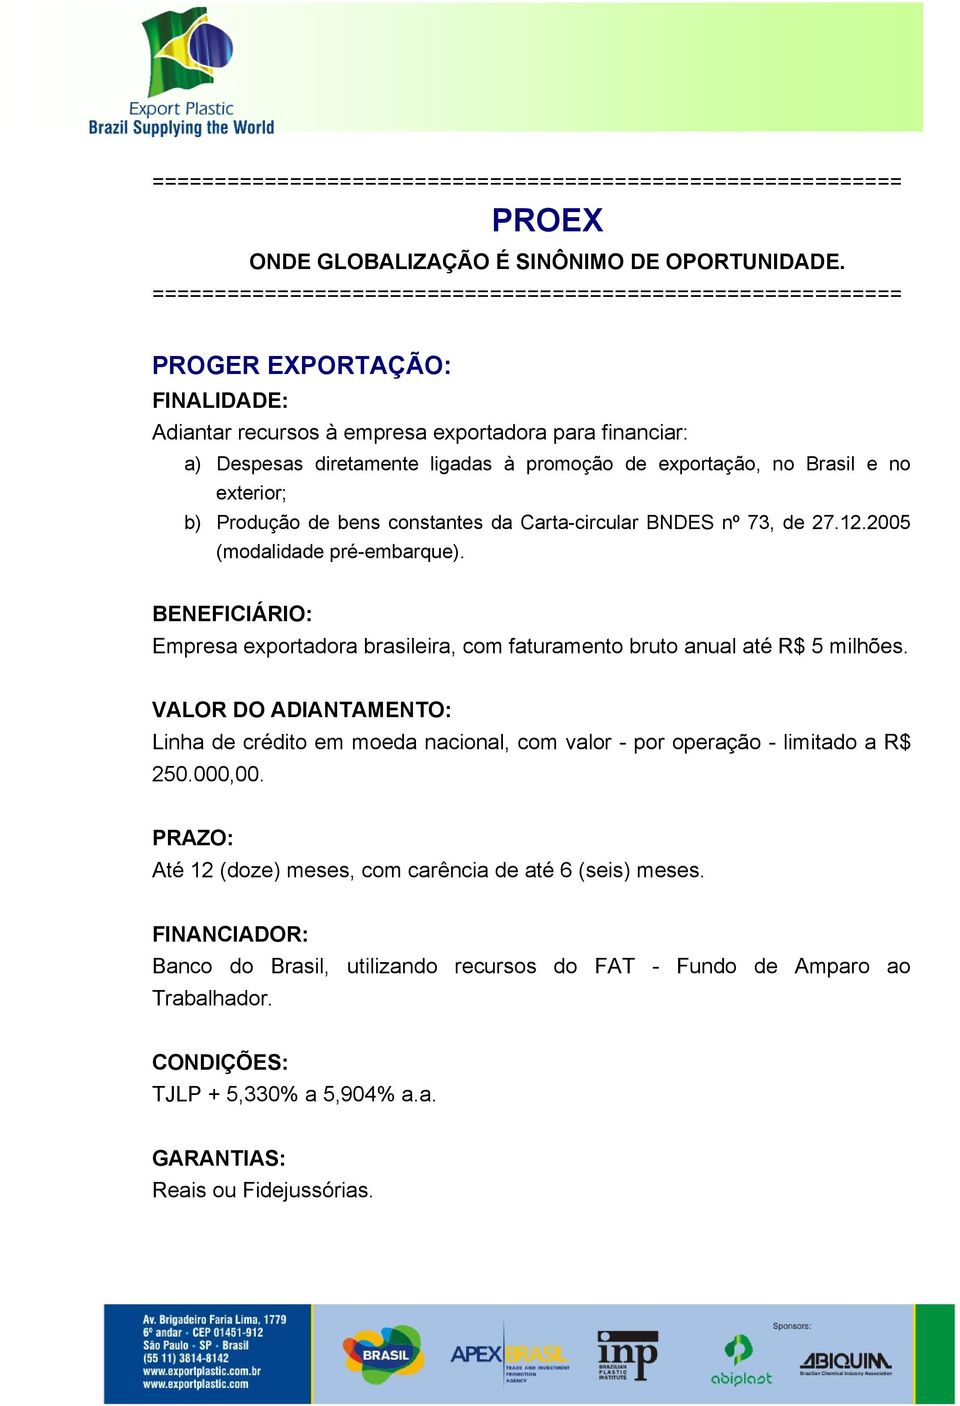 exportação, no Brasil e no exterior; b) Produção de bens constantes da Carta-circular BNDES nº 73, de 27.12.2005 (modalidade pré-embarque).